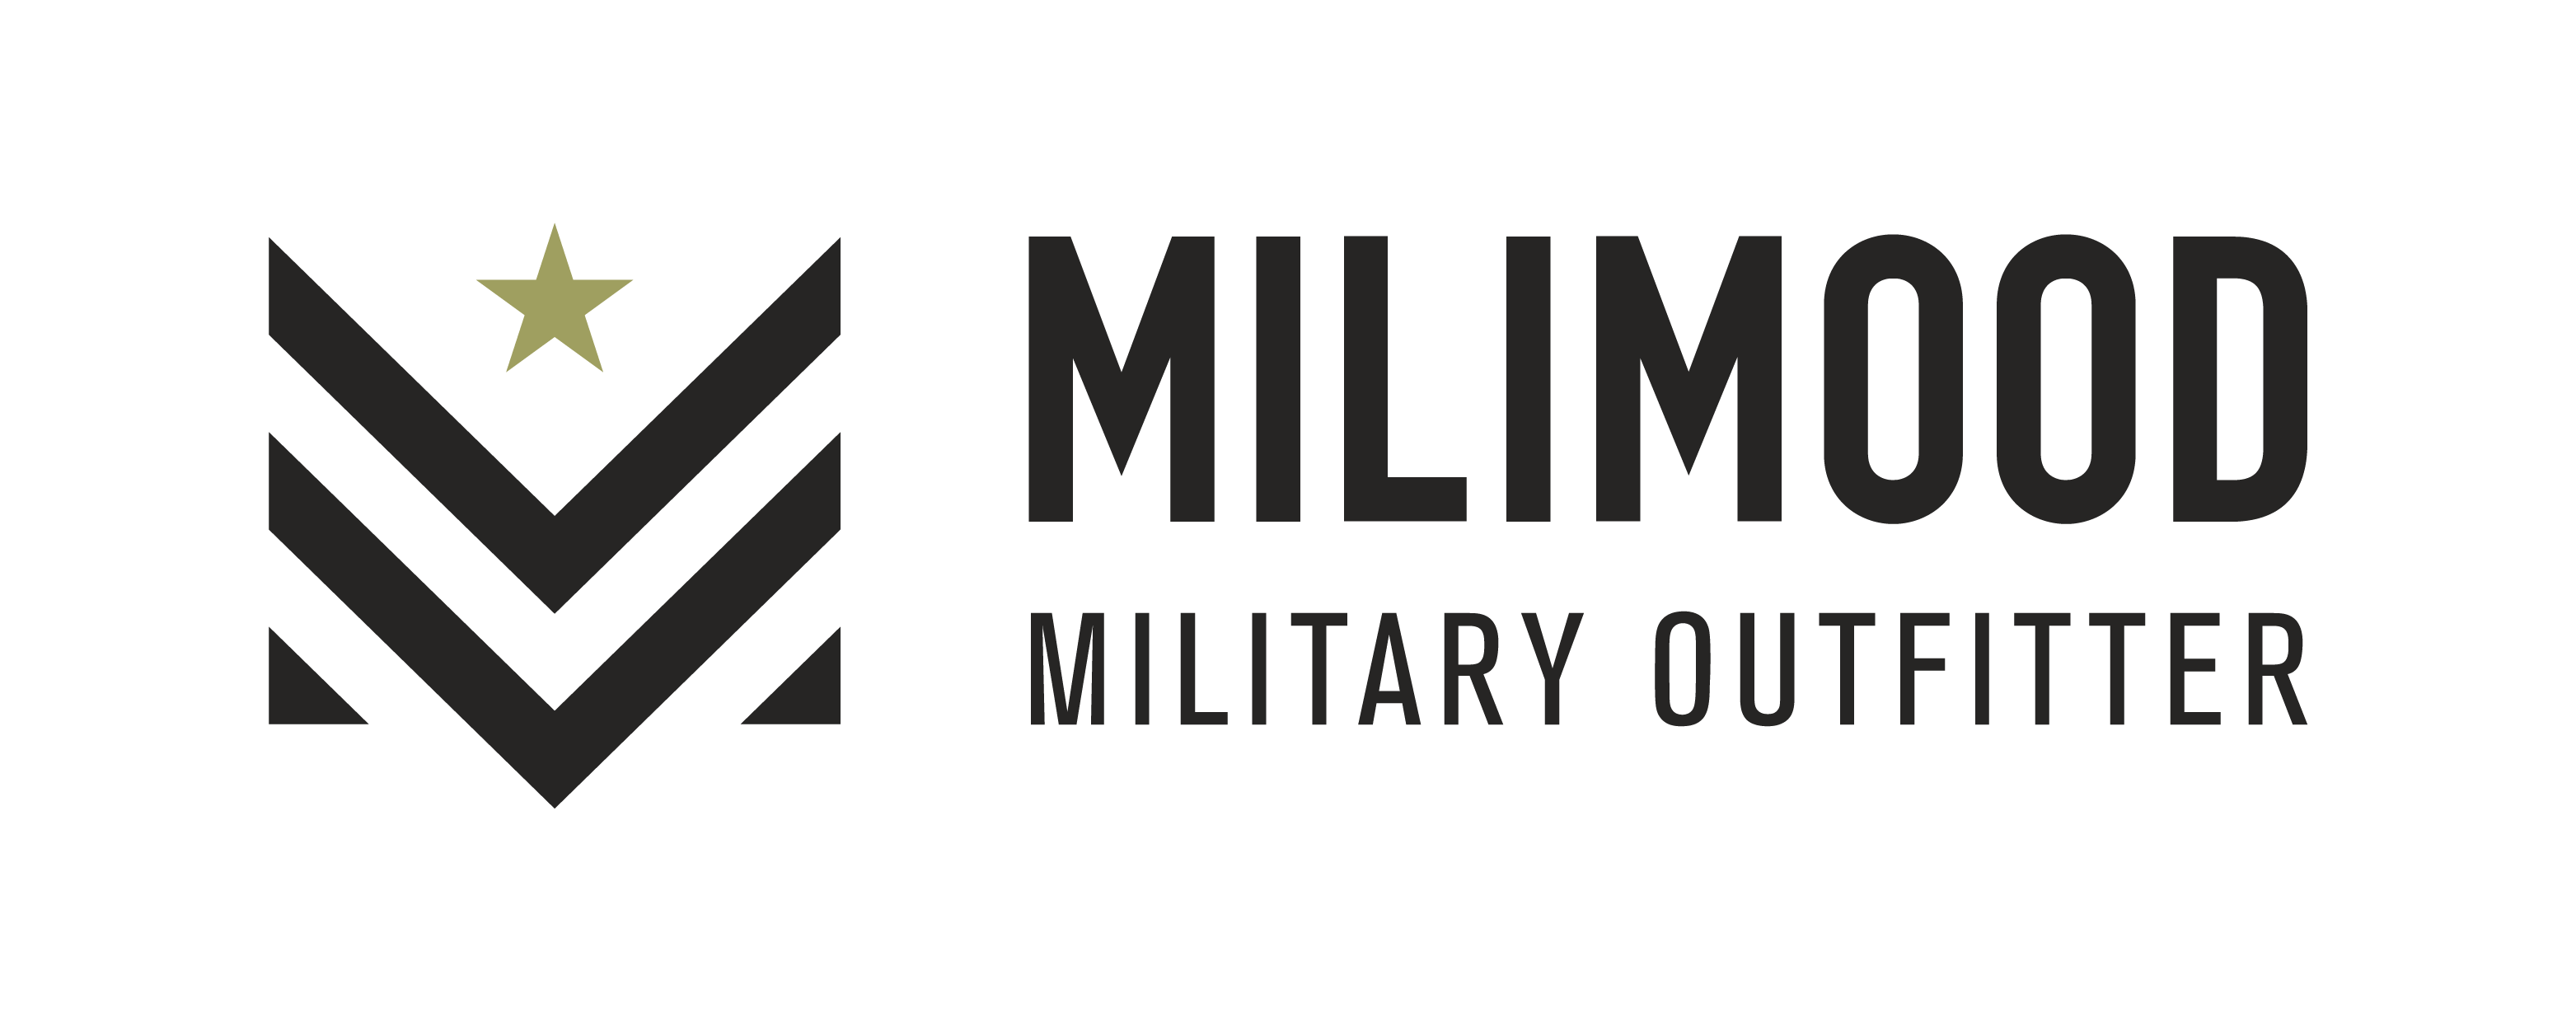 MiliMood Military Outfitter ; Ropa vintage streetwear de origen militar y reproducciones de estas mismas.  ¡Alístate a la moda! ¡Camúflate para ser visto!